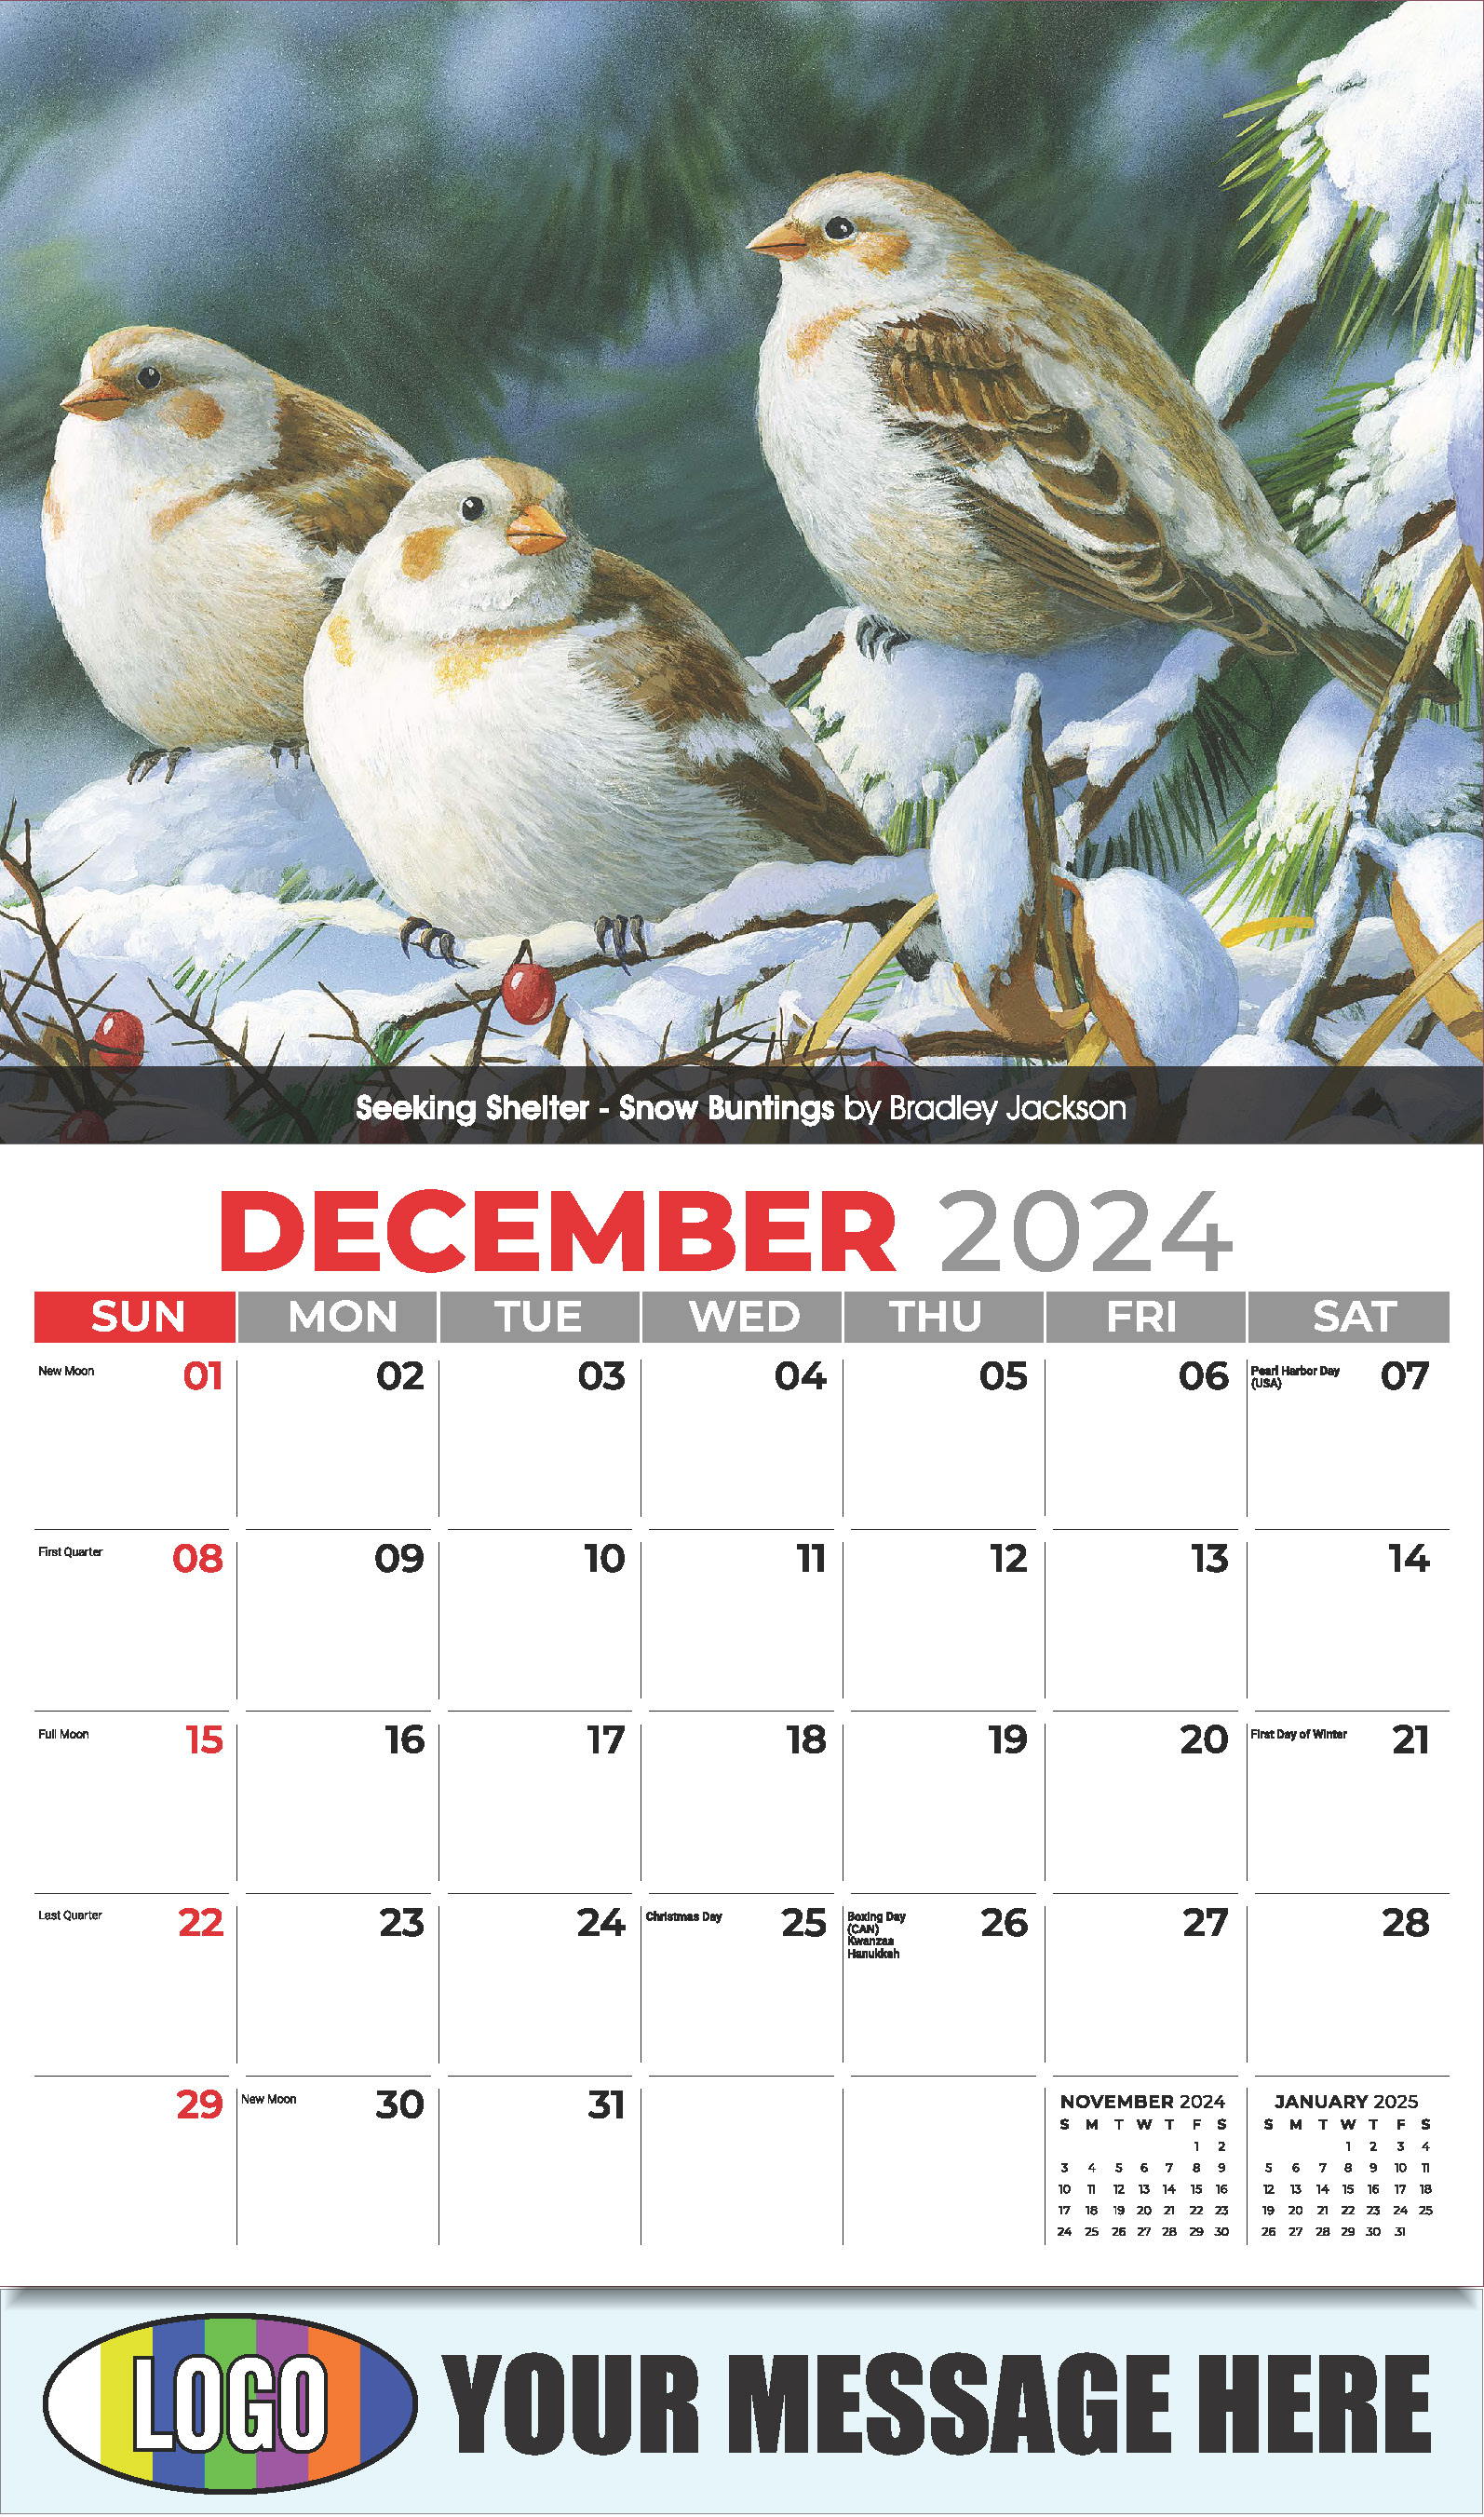 Garden Birds 2025 Business Promotional Calendar - December_a